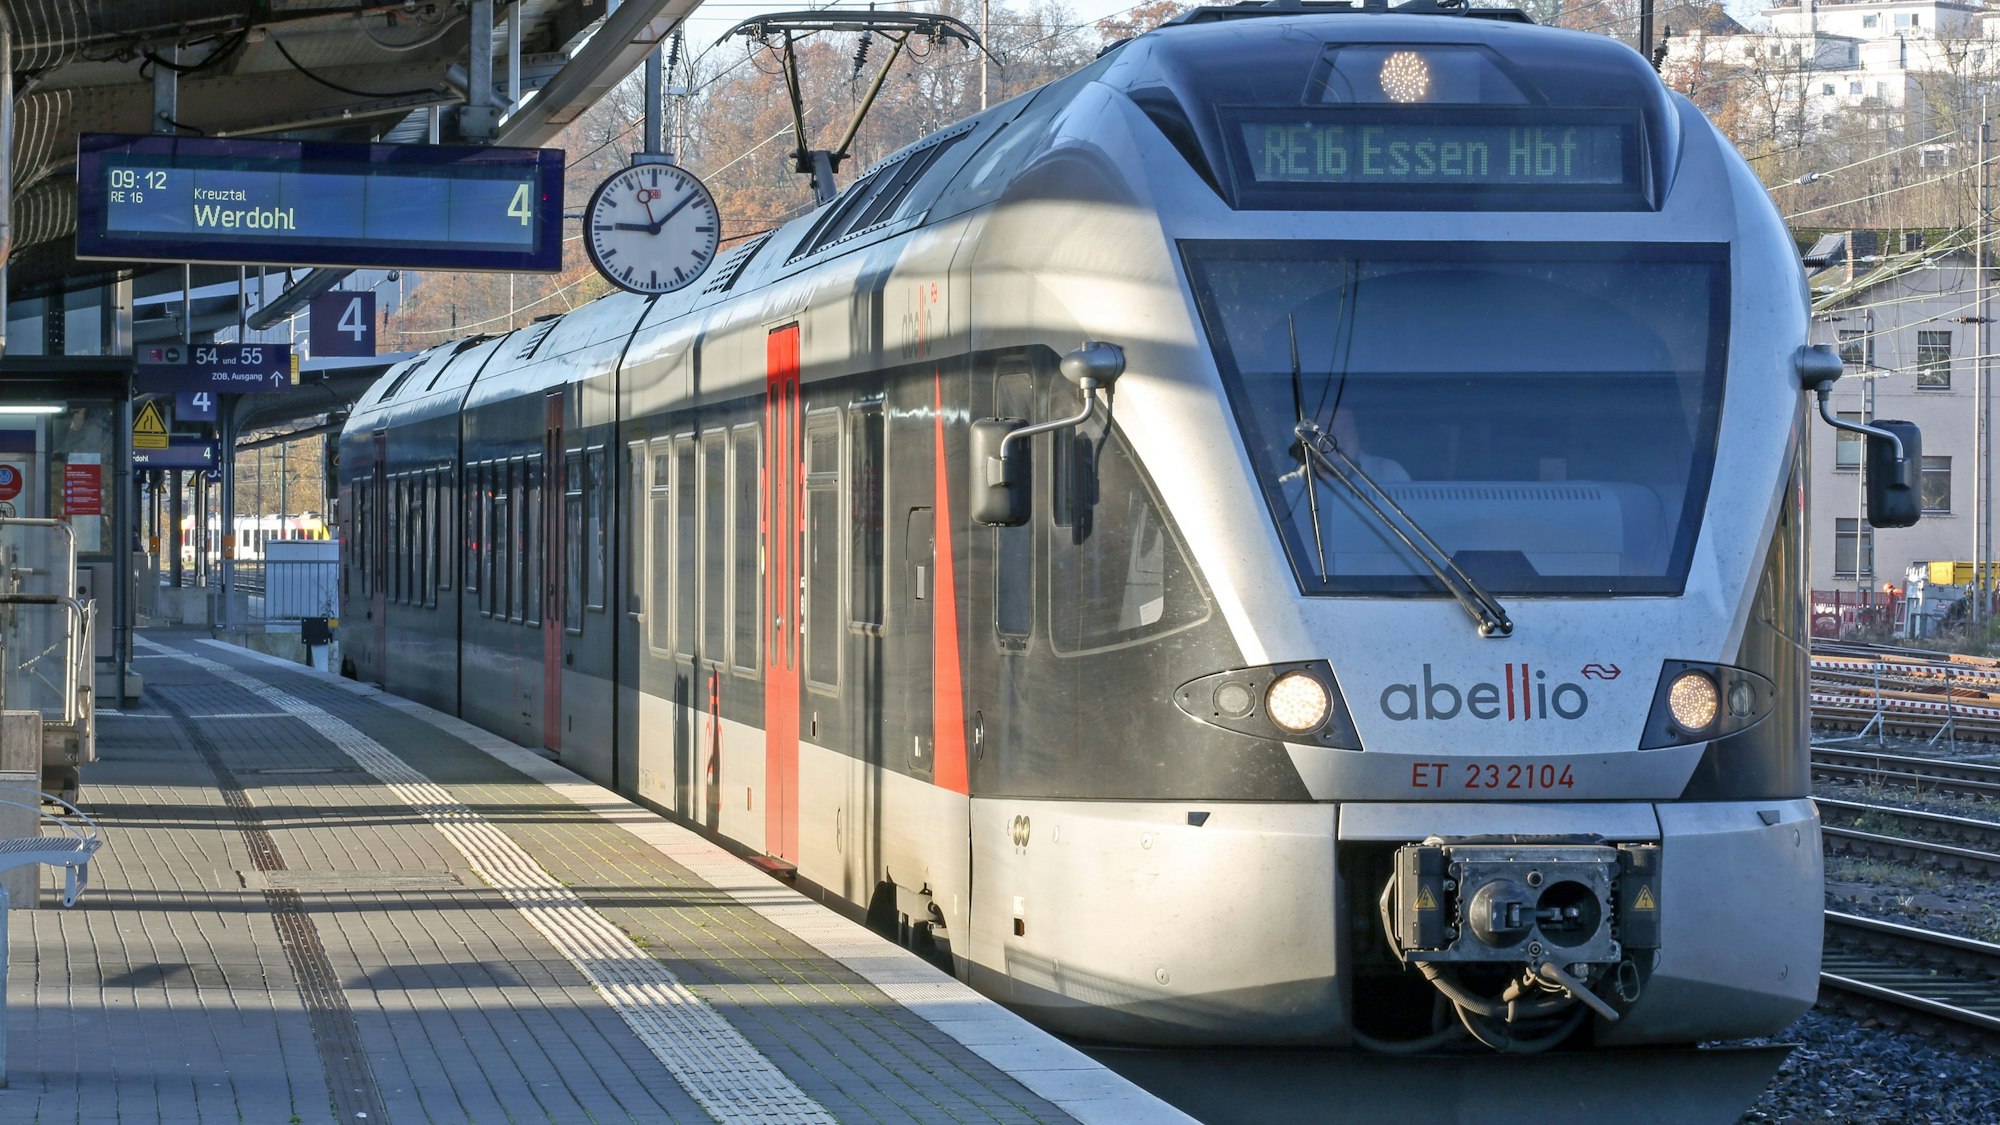 Ein Zug von Abellio steht im Hauptbahnhof. Die Sonne scheint auf die silberfarbenen Wagen.